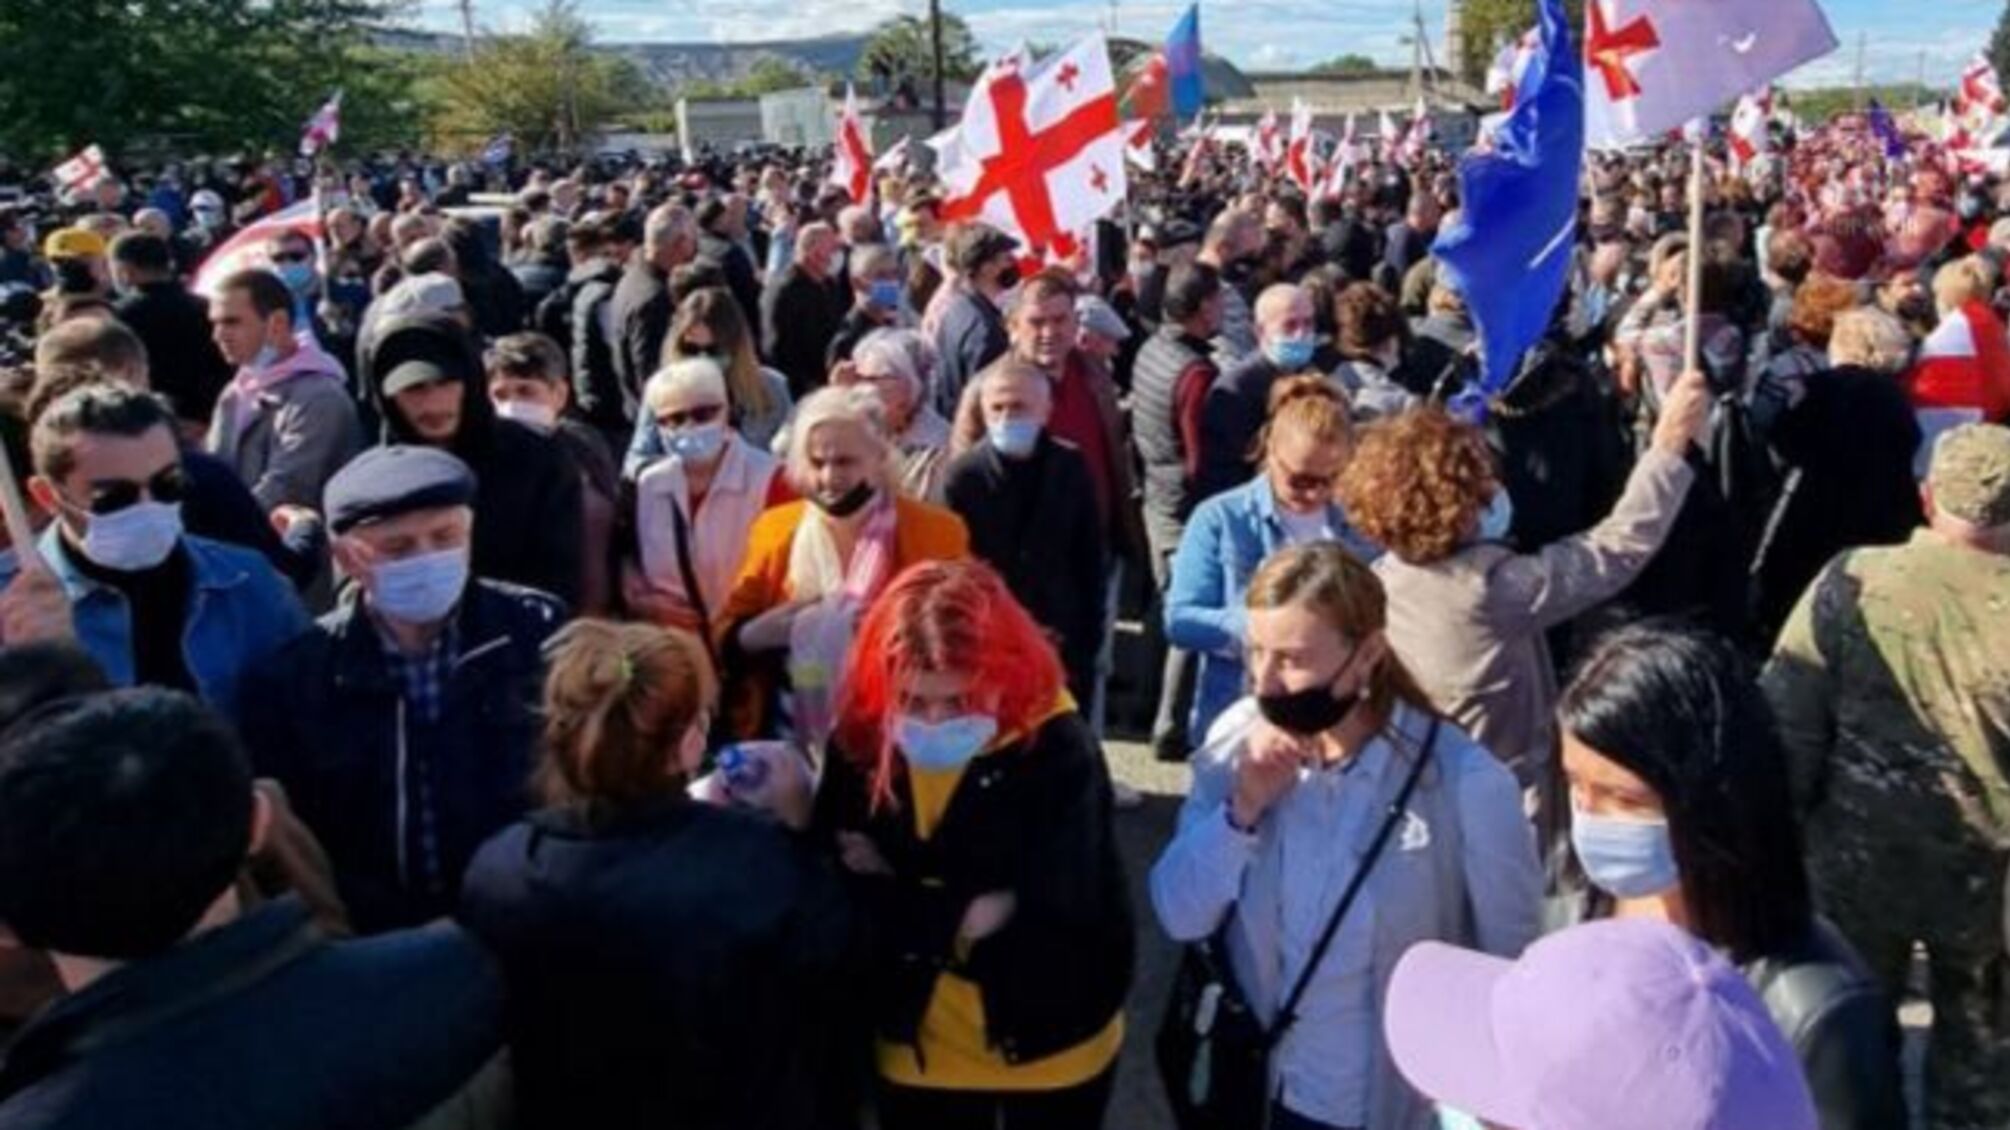 У Грузії проходить мітинг на підтримку Саакашвілі